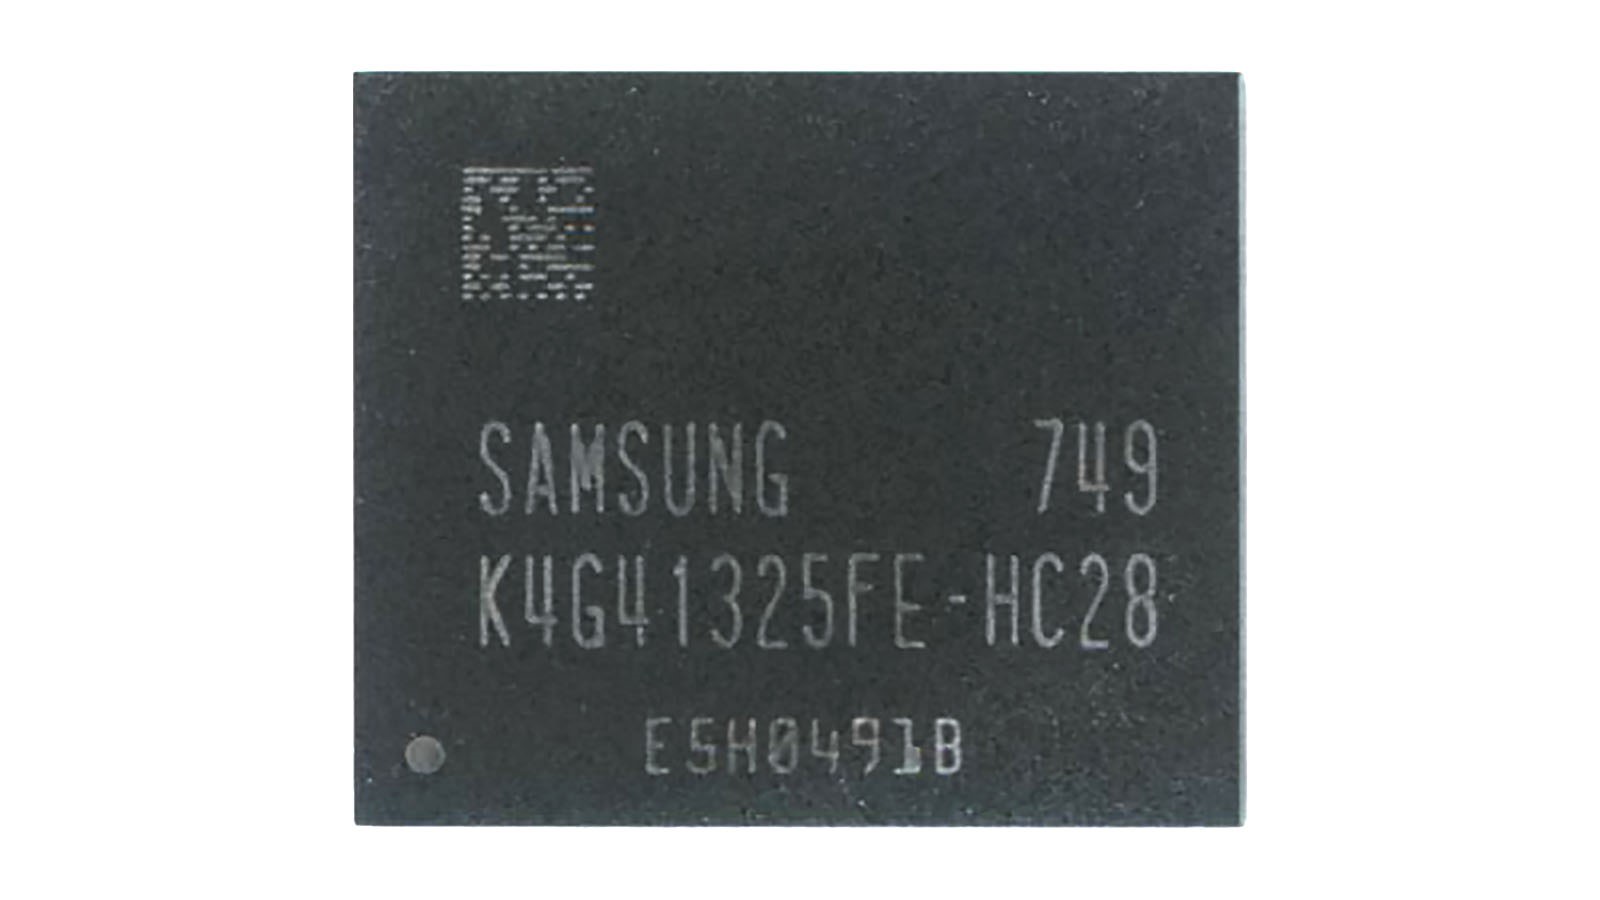 Видеопамять GDDR5 Samsung K4G41325FE-HC28 17год.